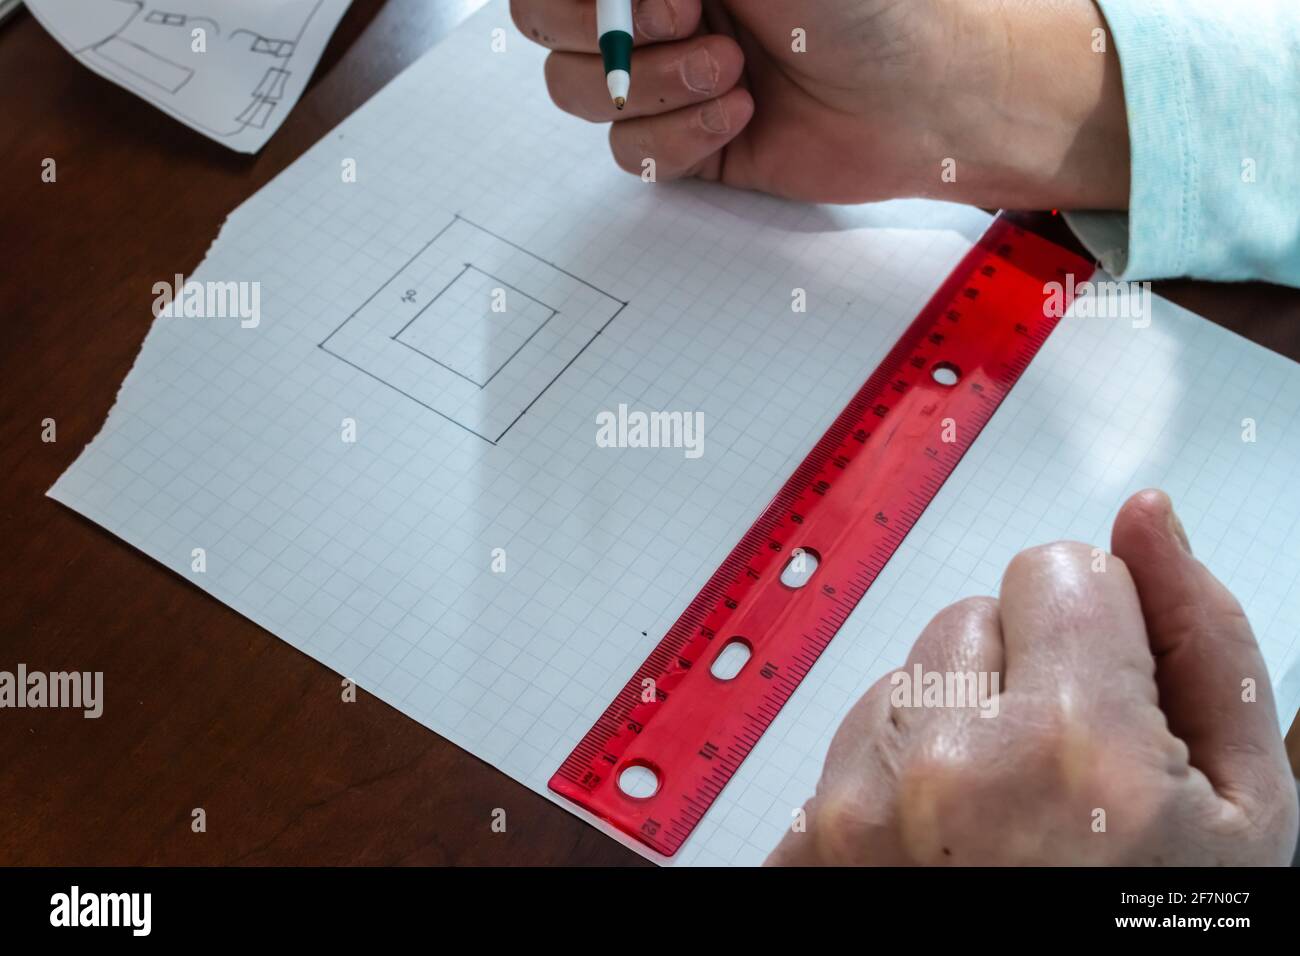 Una donna usa una penna per contare le misure e tracciare una pianta per una casa su carta grafica quadrata usando un righello rosso chiaro sulla scrivania di legno duro. Foto Stock